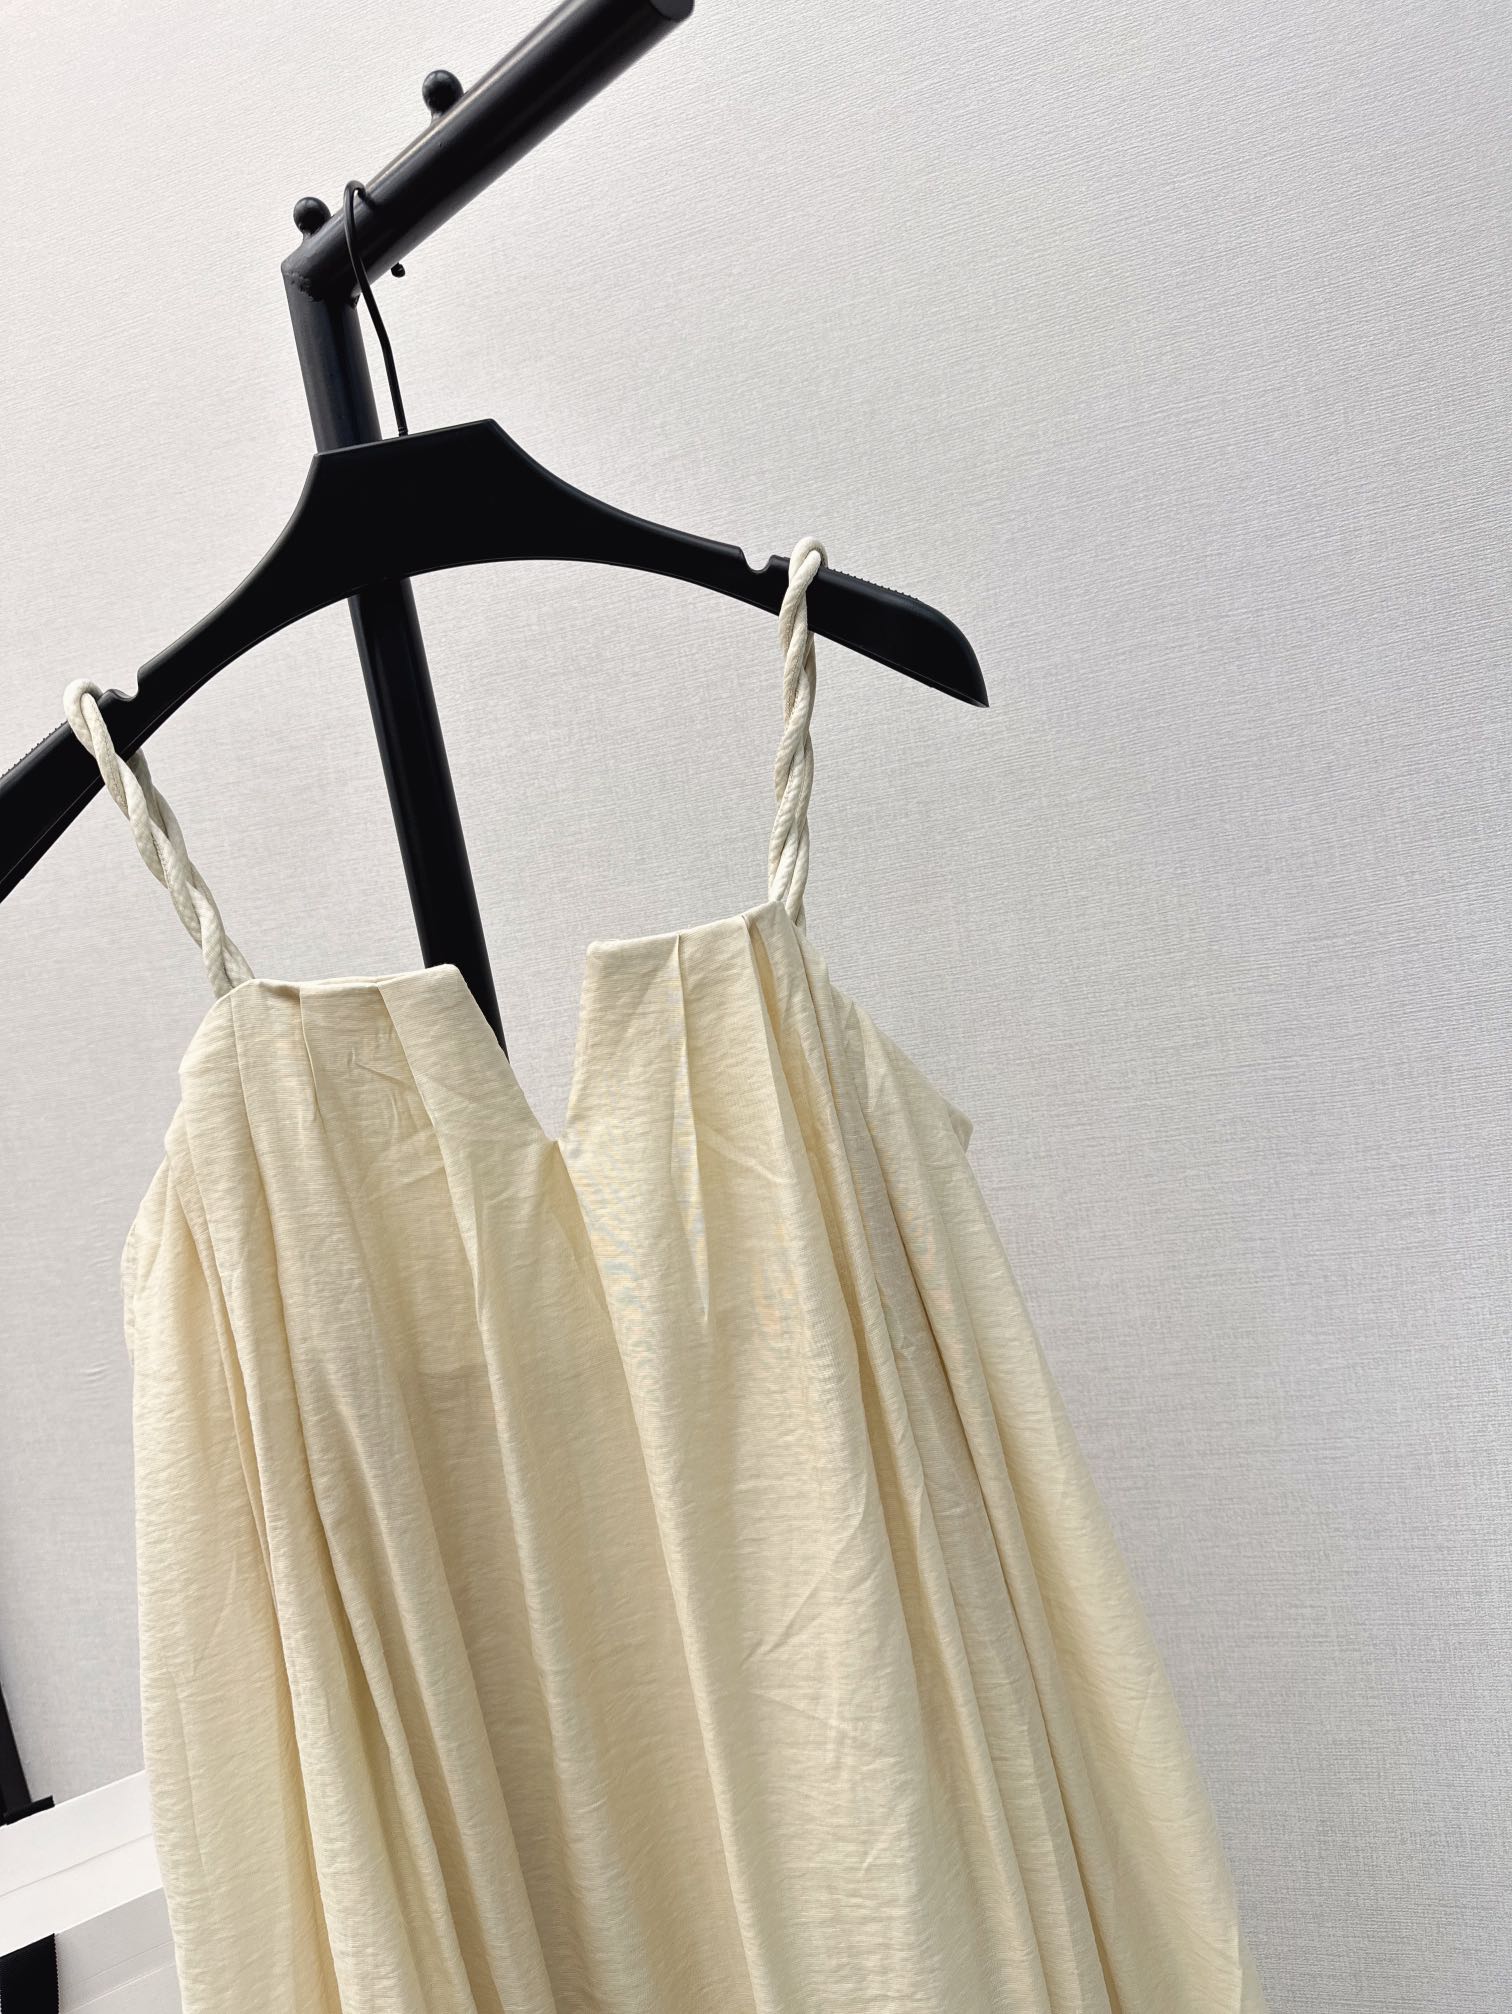 独家首发时髦小众设计24Ss春夏最新款极简风吊带长款连衣裙绝美小仙女白富美神器！极简主义风格气质又美又仙